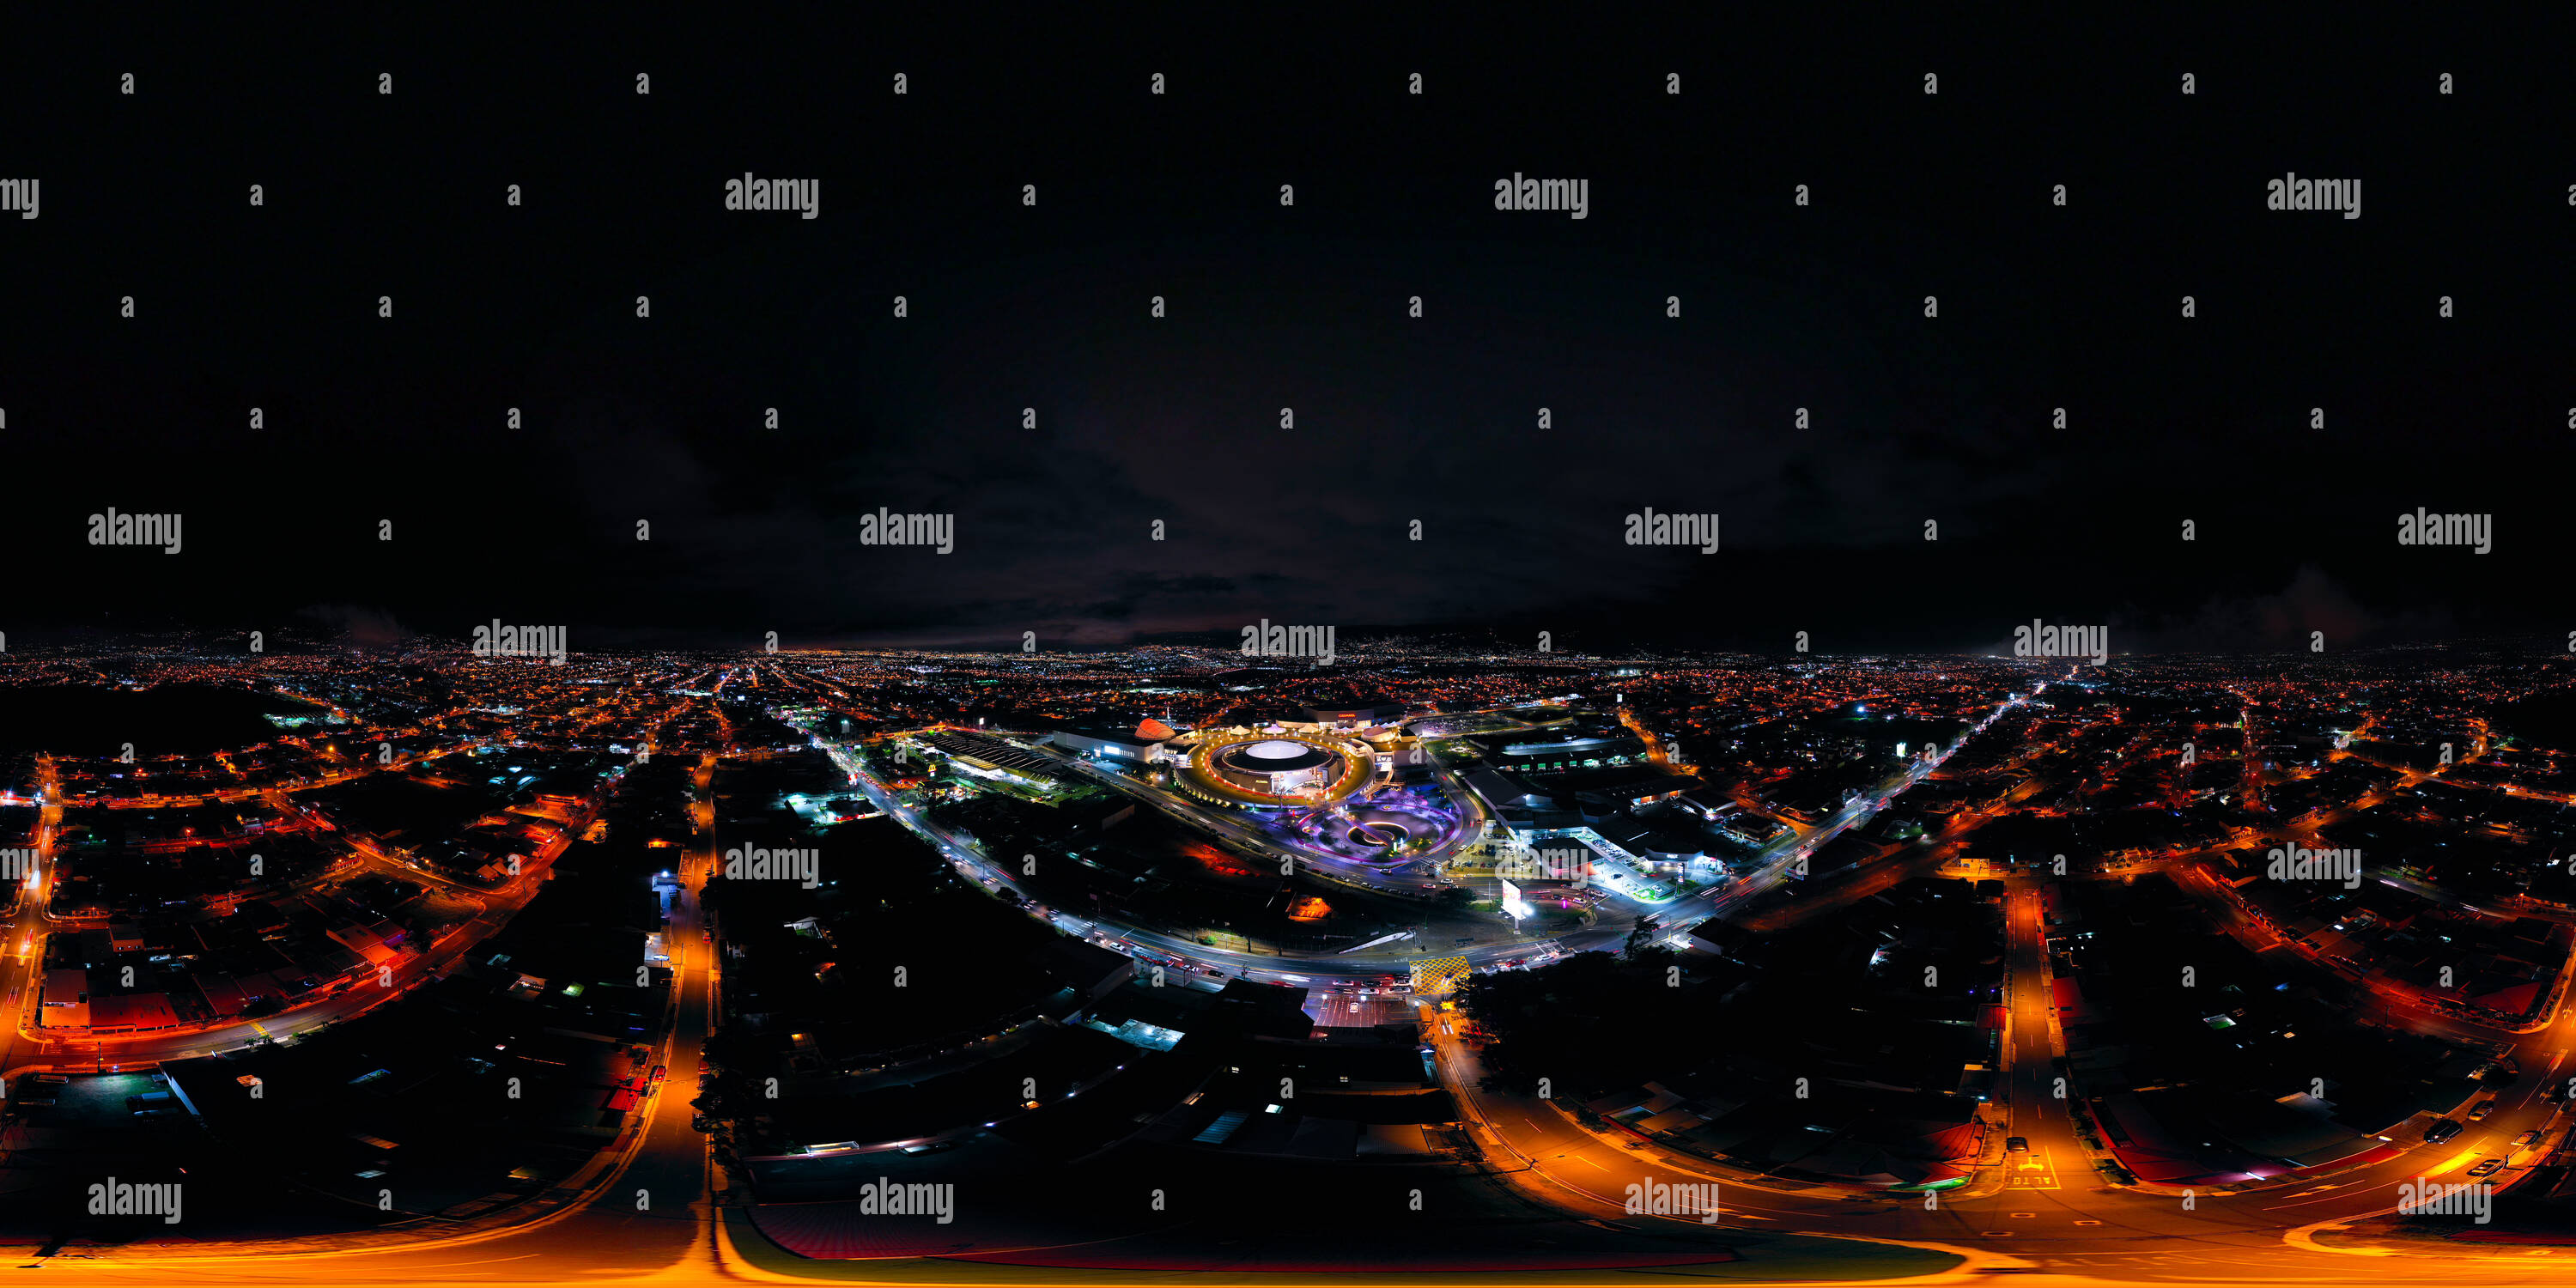 360 degree panoramic view of Psx 20191216 205714